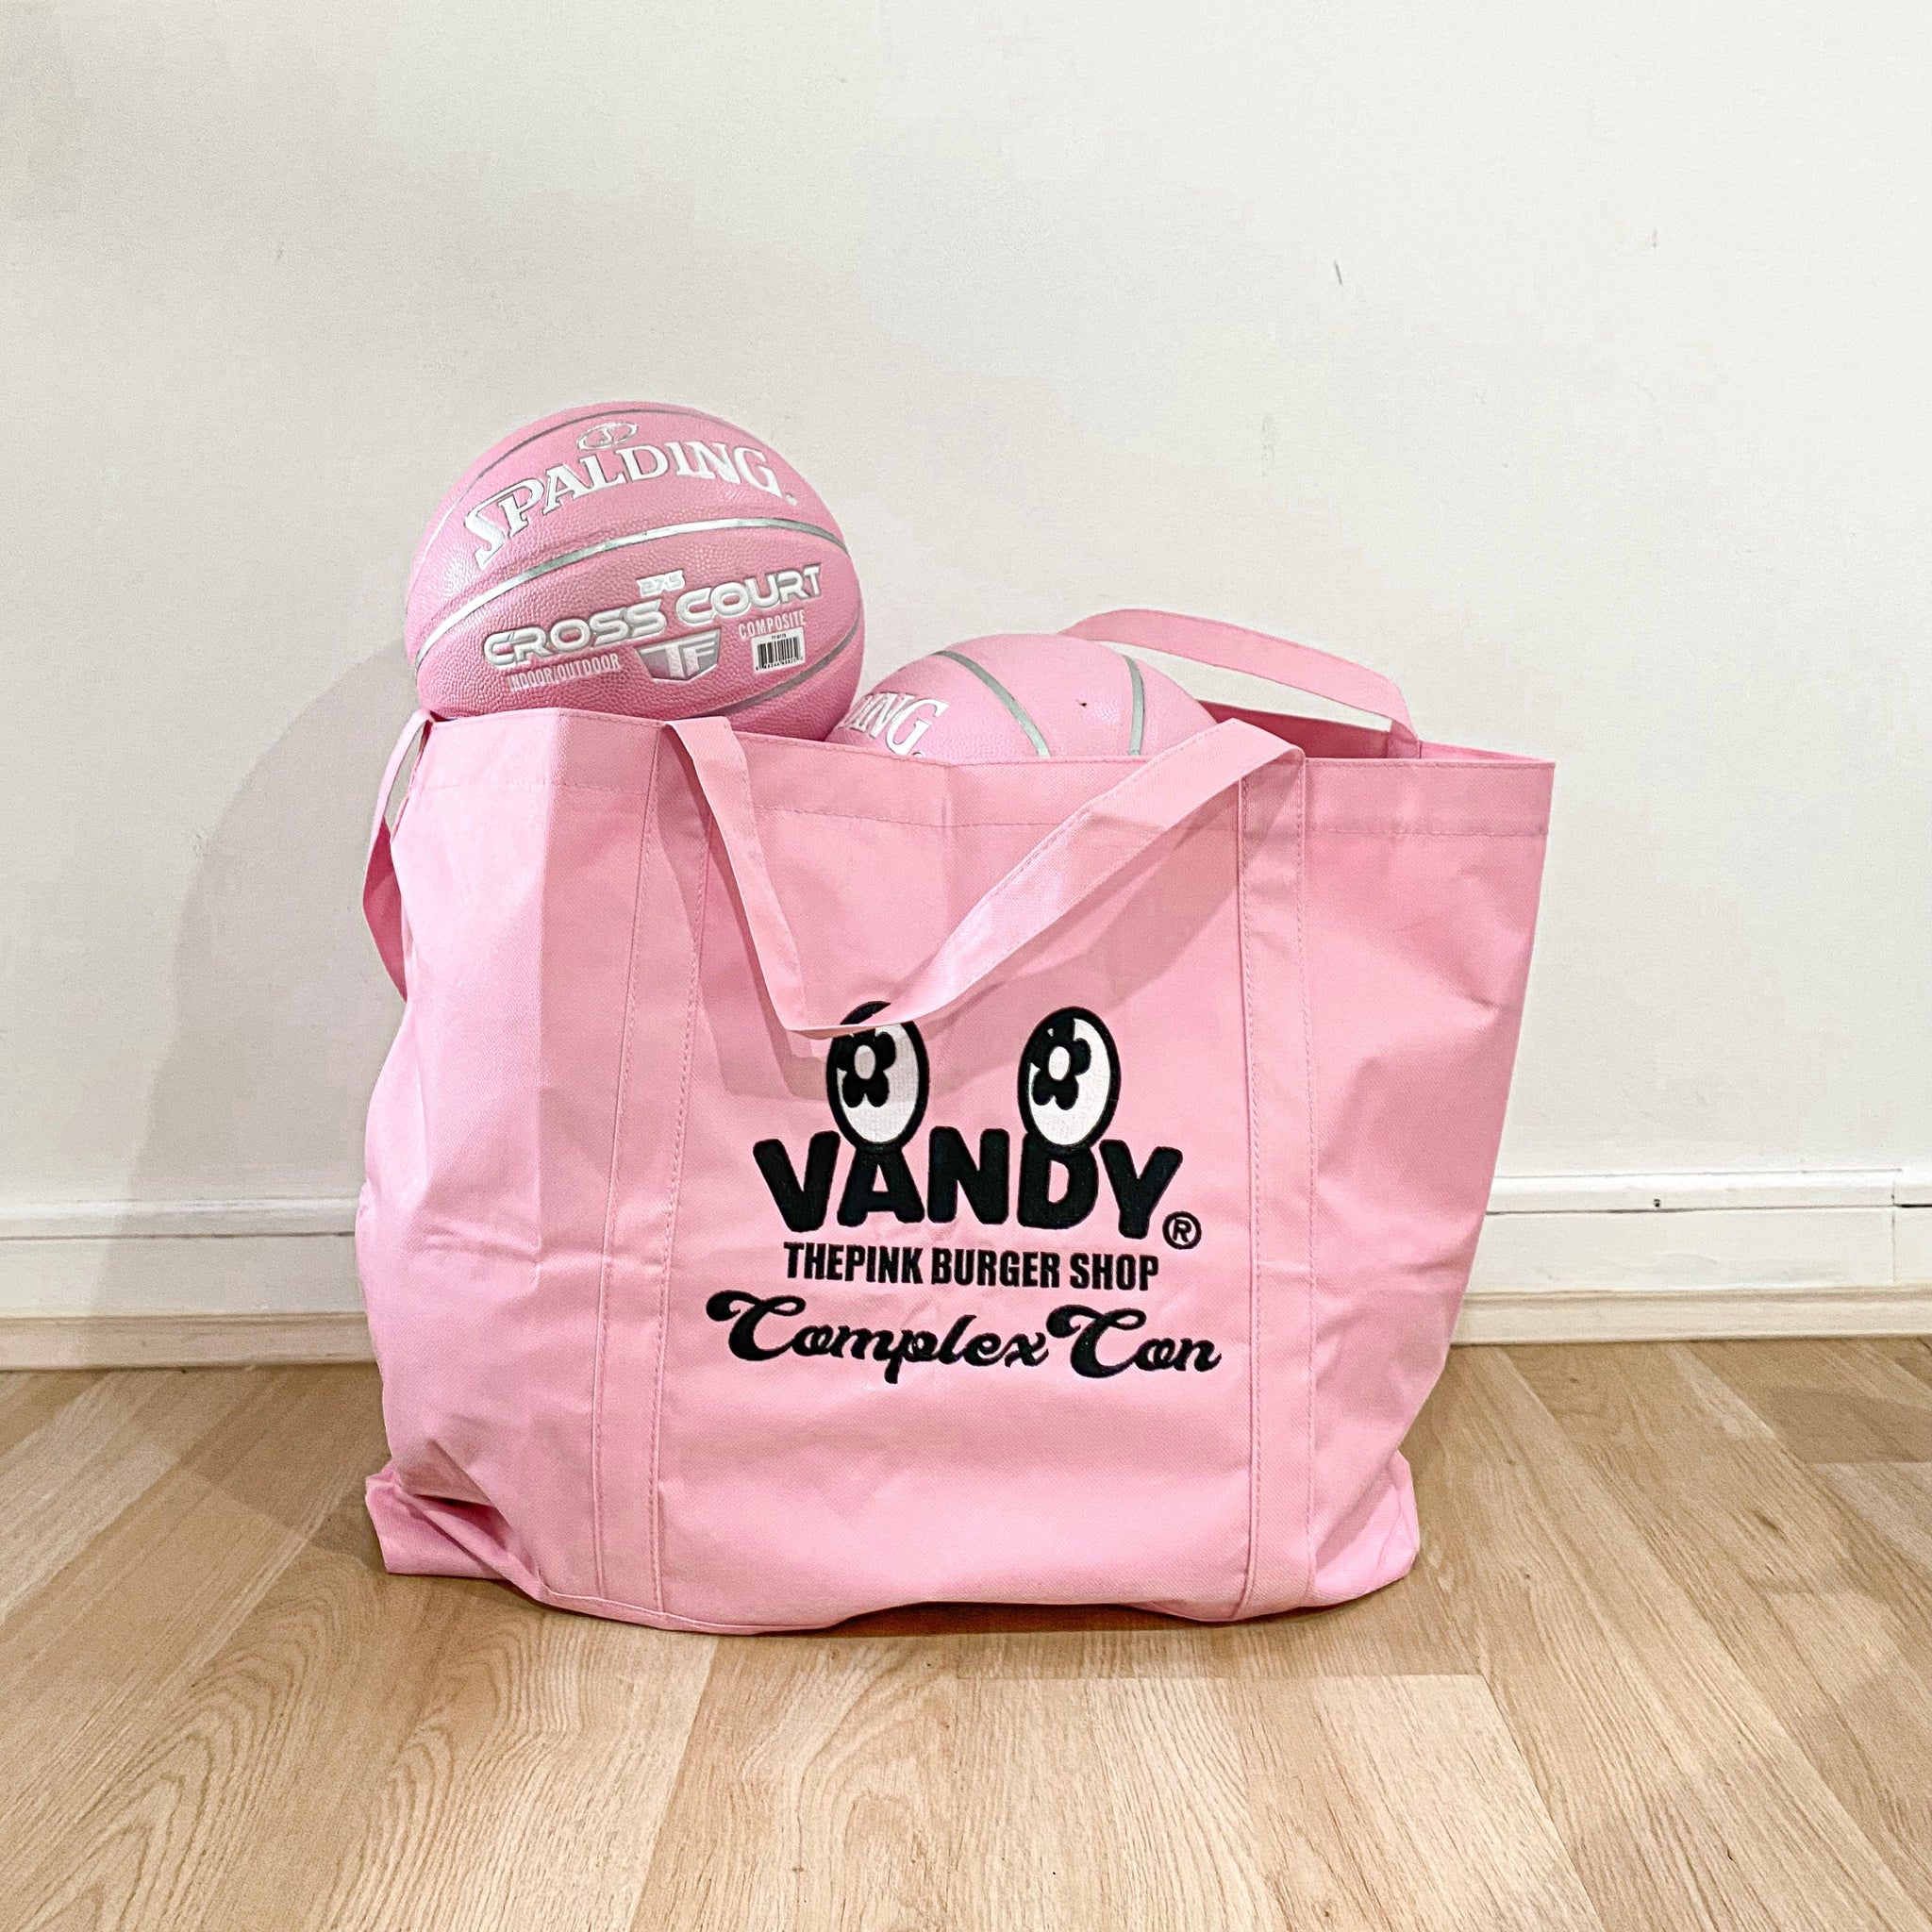 Matera Vandy bag by complexcon – La casa del SNEAKERHEAD